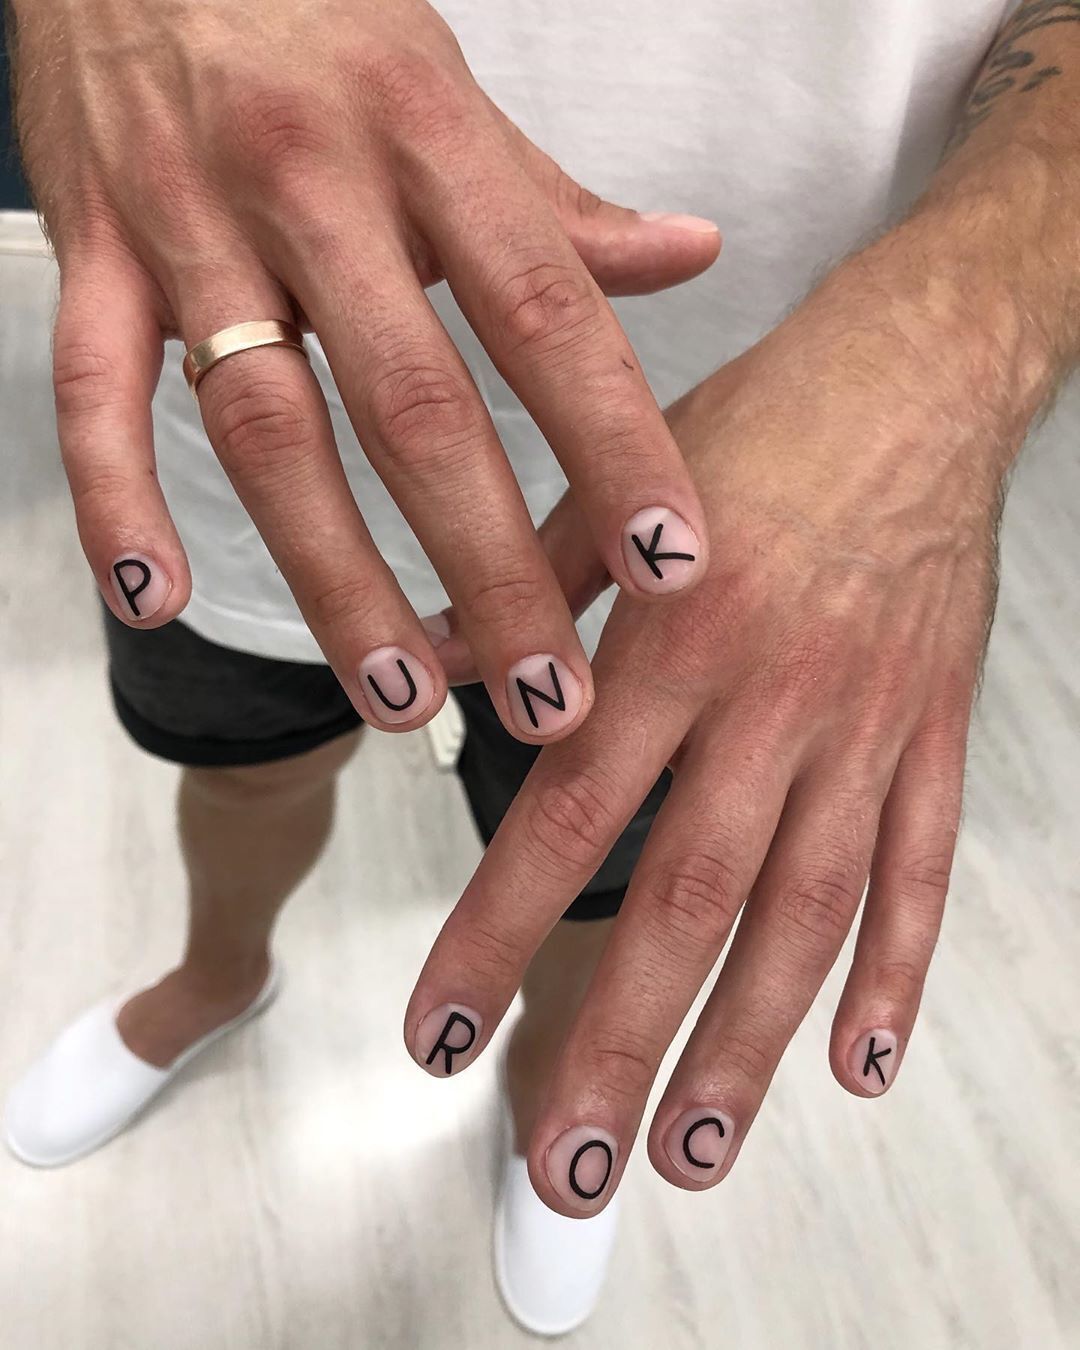 Нафарбовані нігті Юрія Дудя викликали суперечки в мережі (Instagram Юрія Дудя)